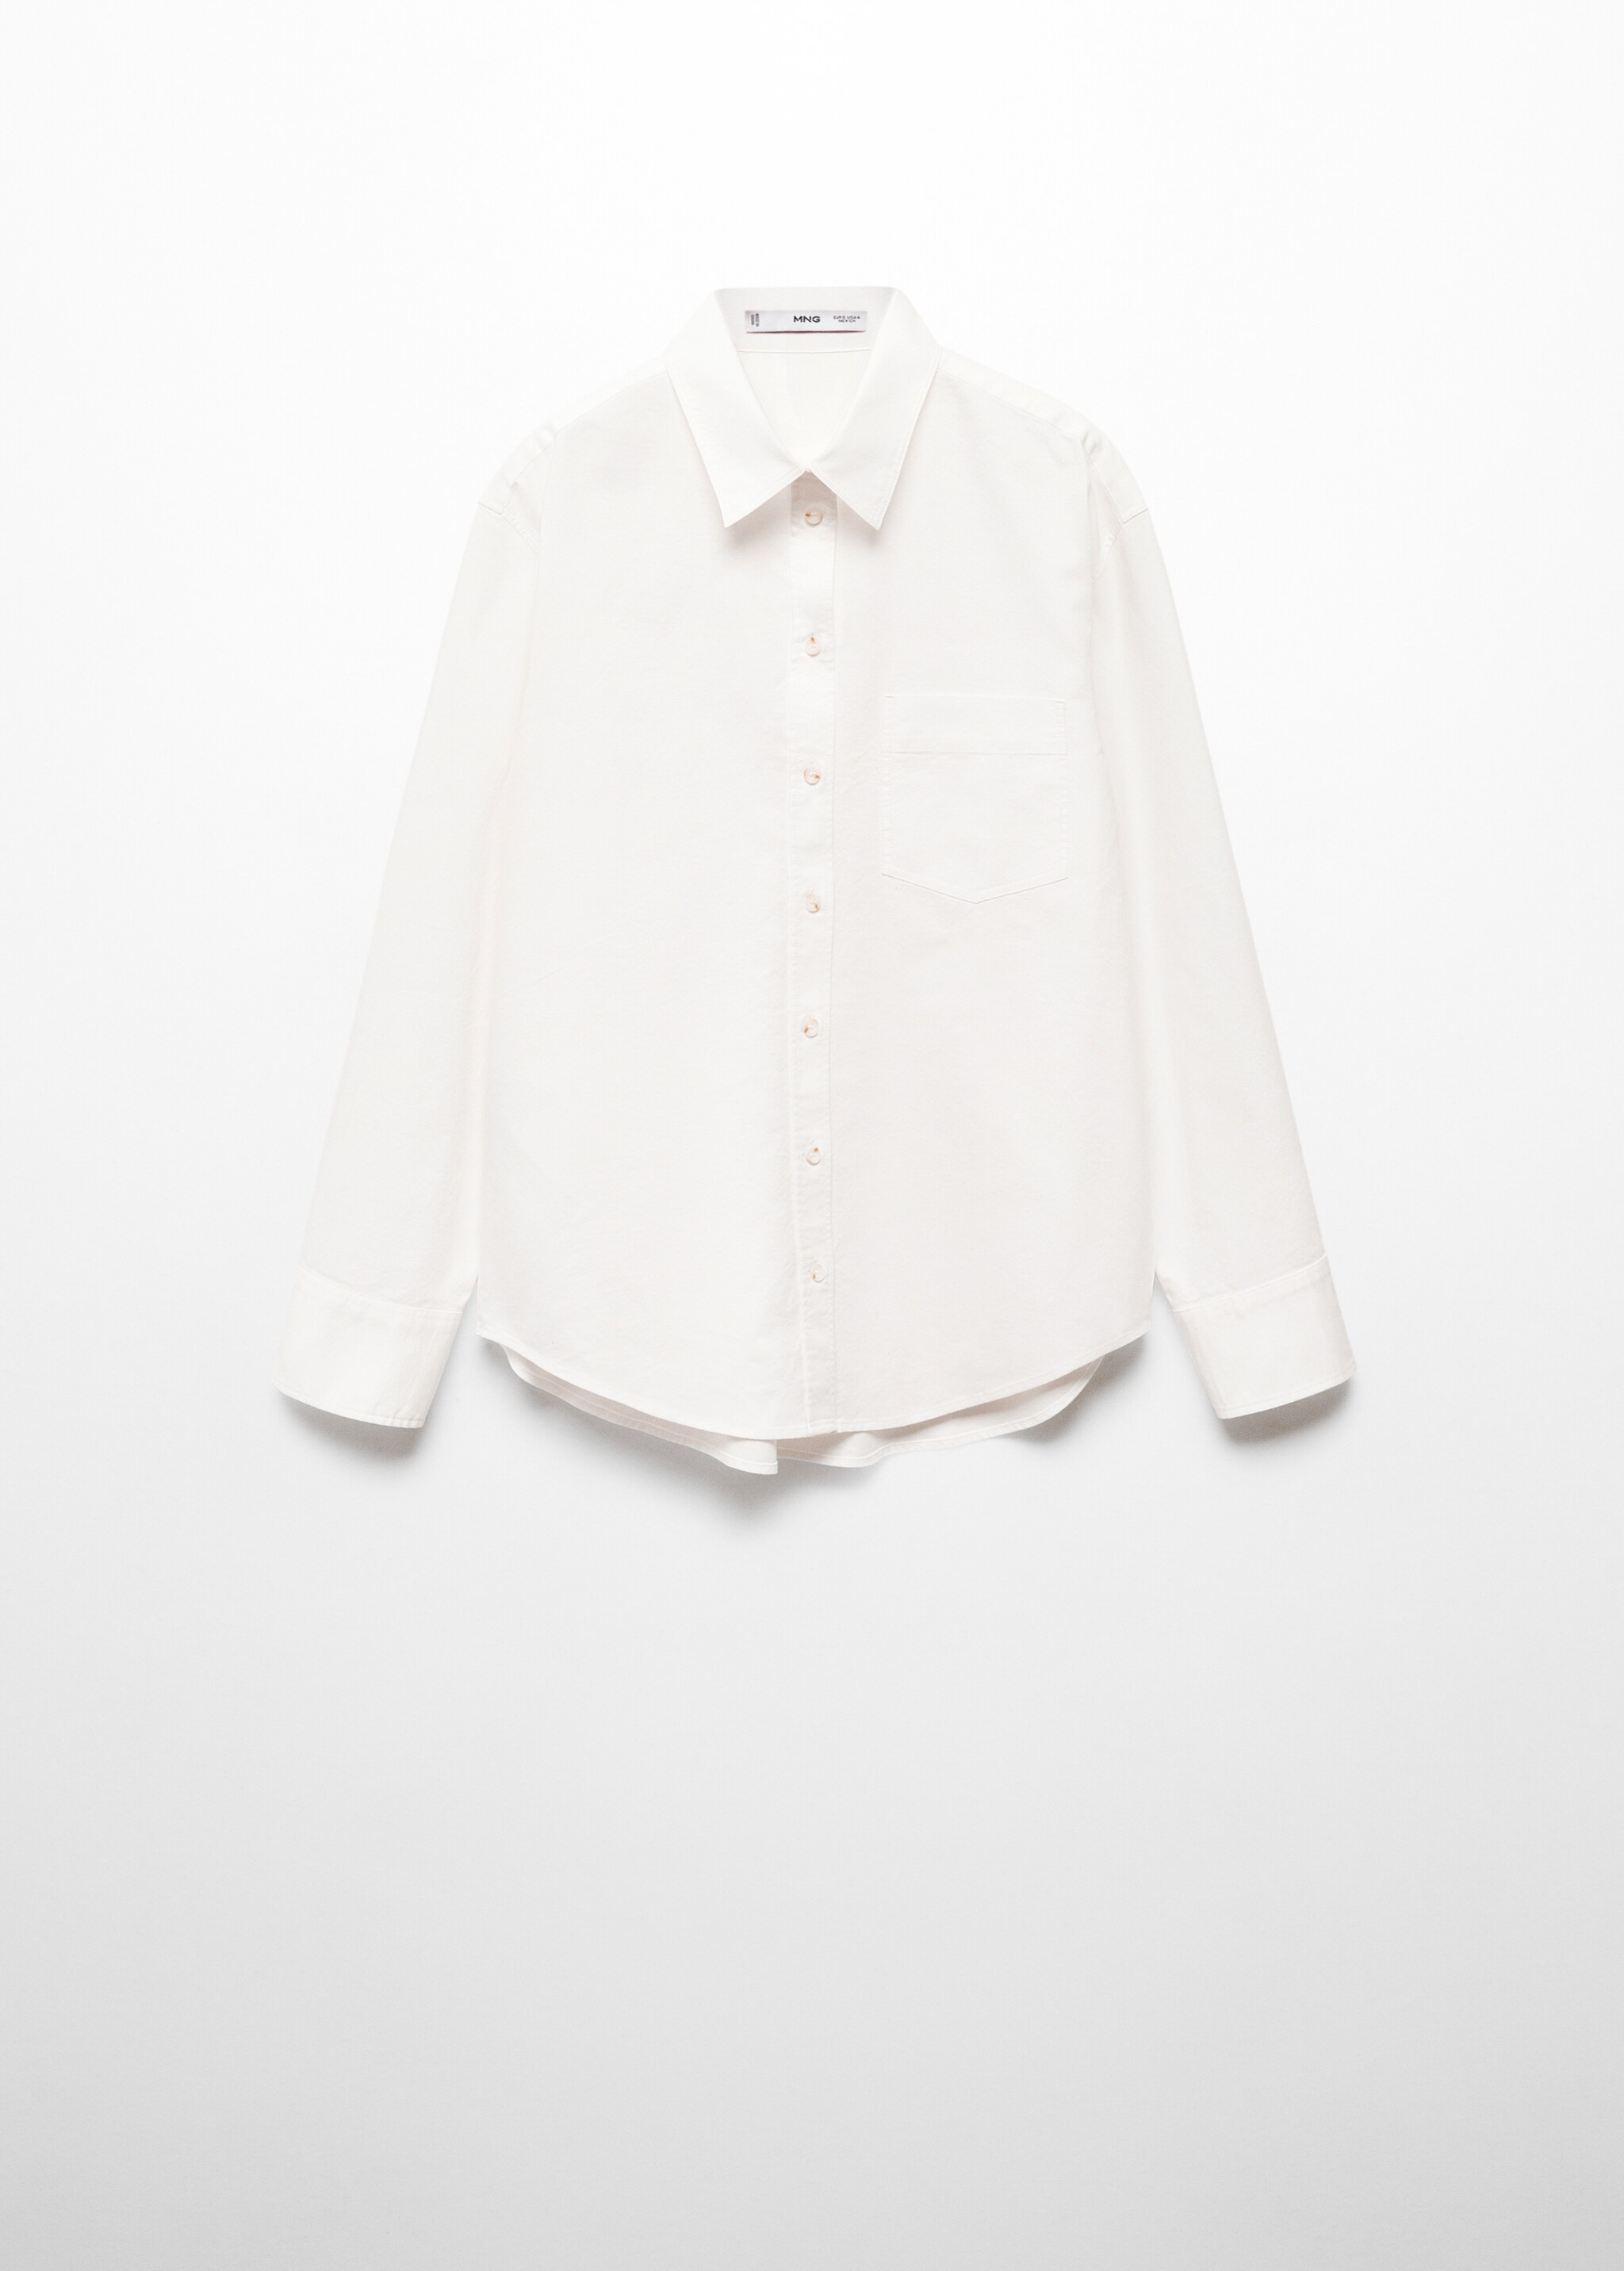 Camisa 100% algodón bolsillo - Artículo sin modelo